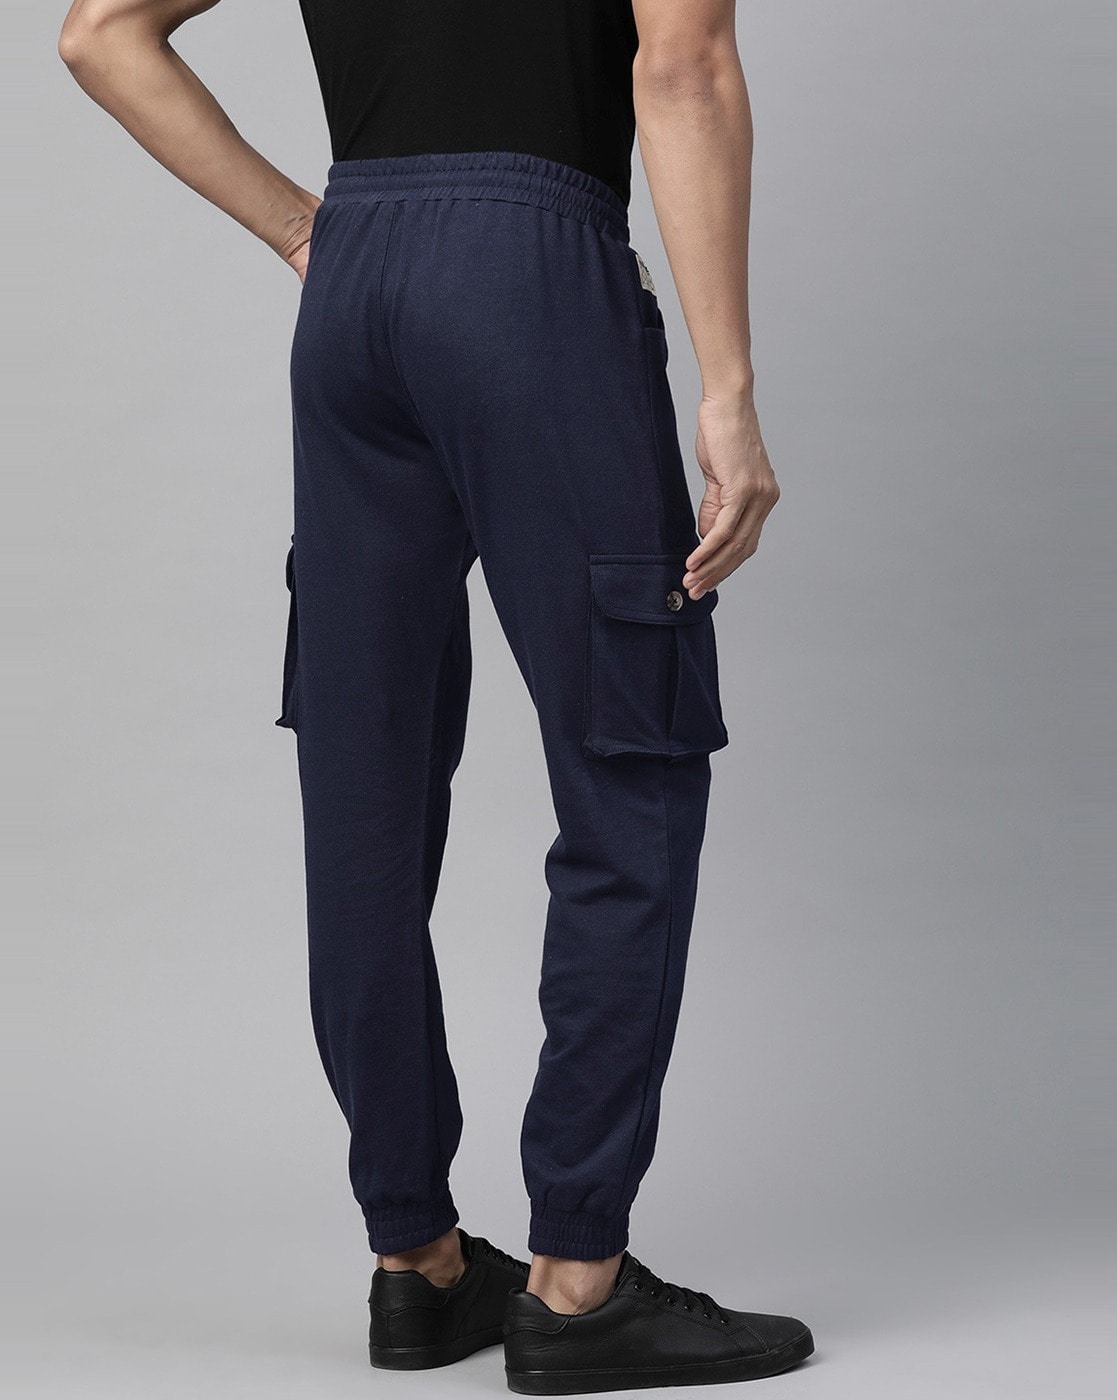 Xersion Blue Active Pants Size L - 48% off